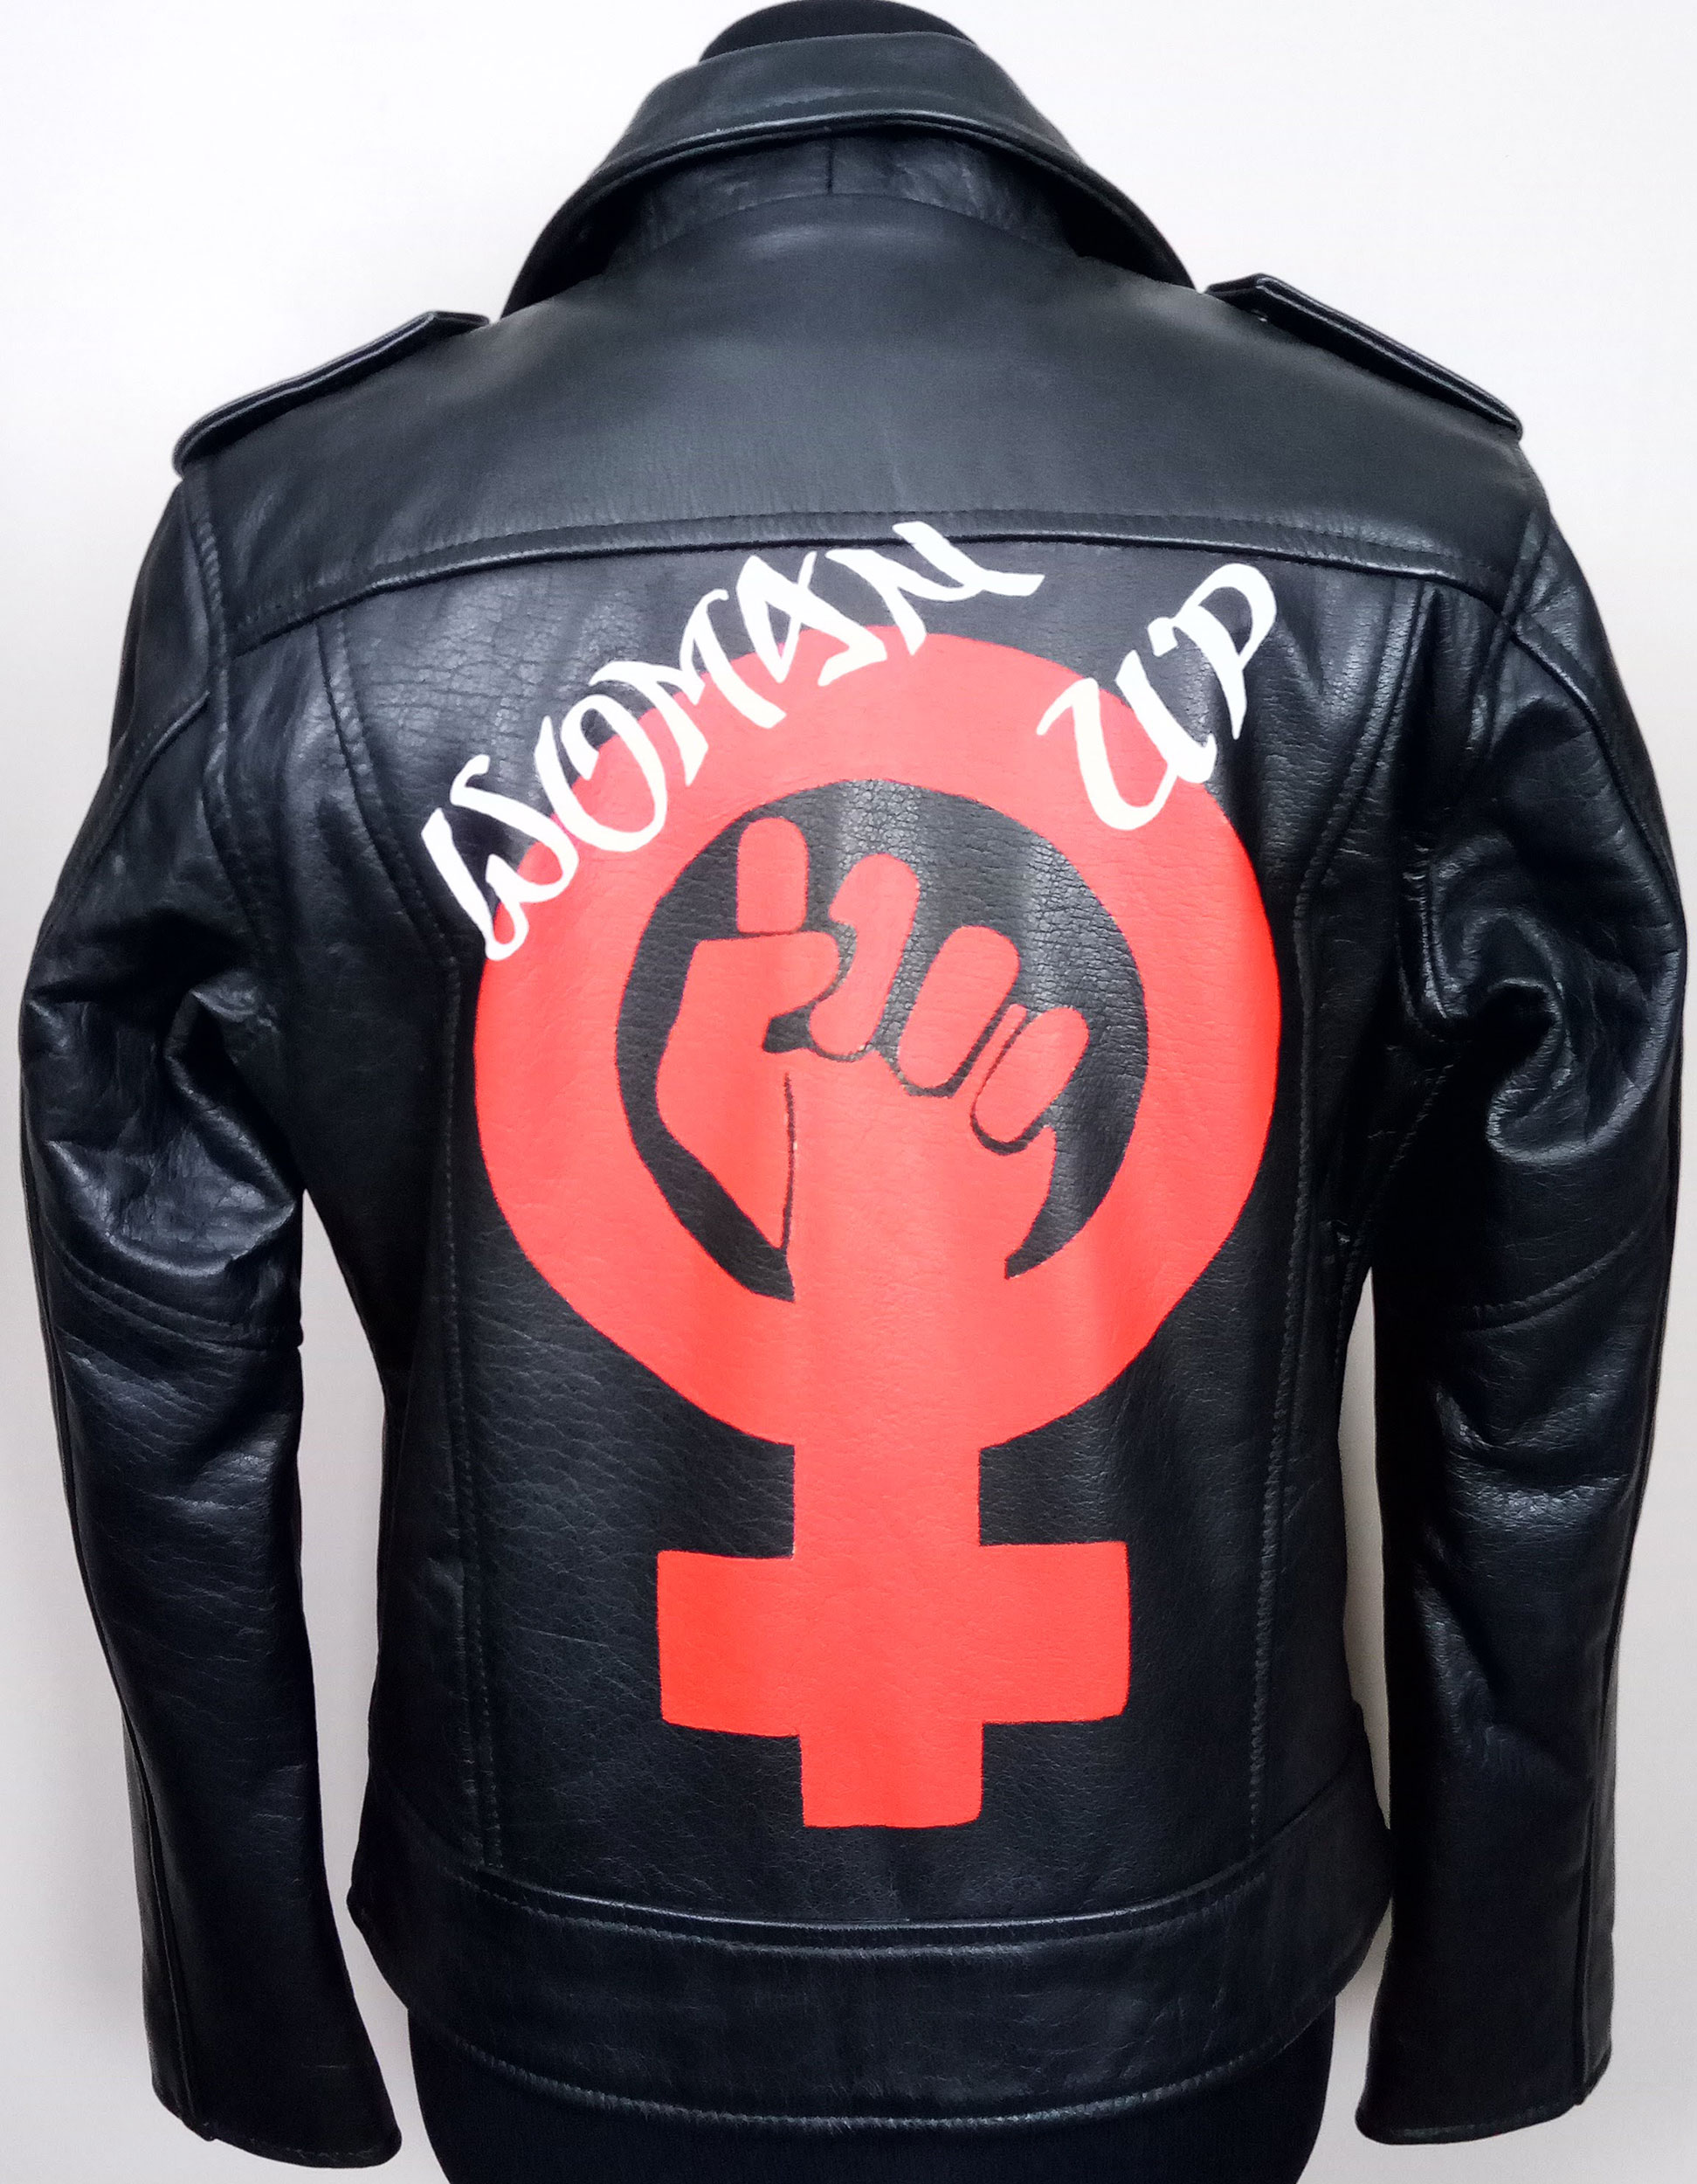 Superforme Women's Liana Vegan Leather Utility Jacket - White